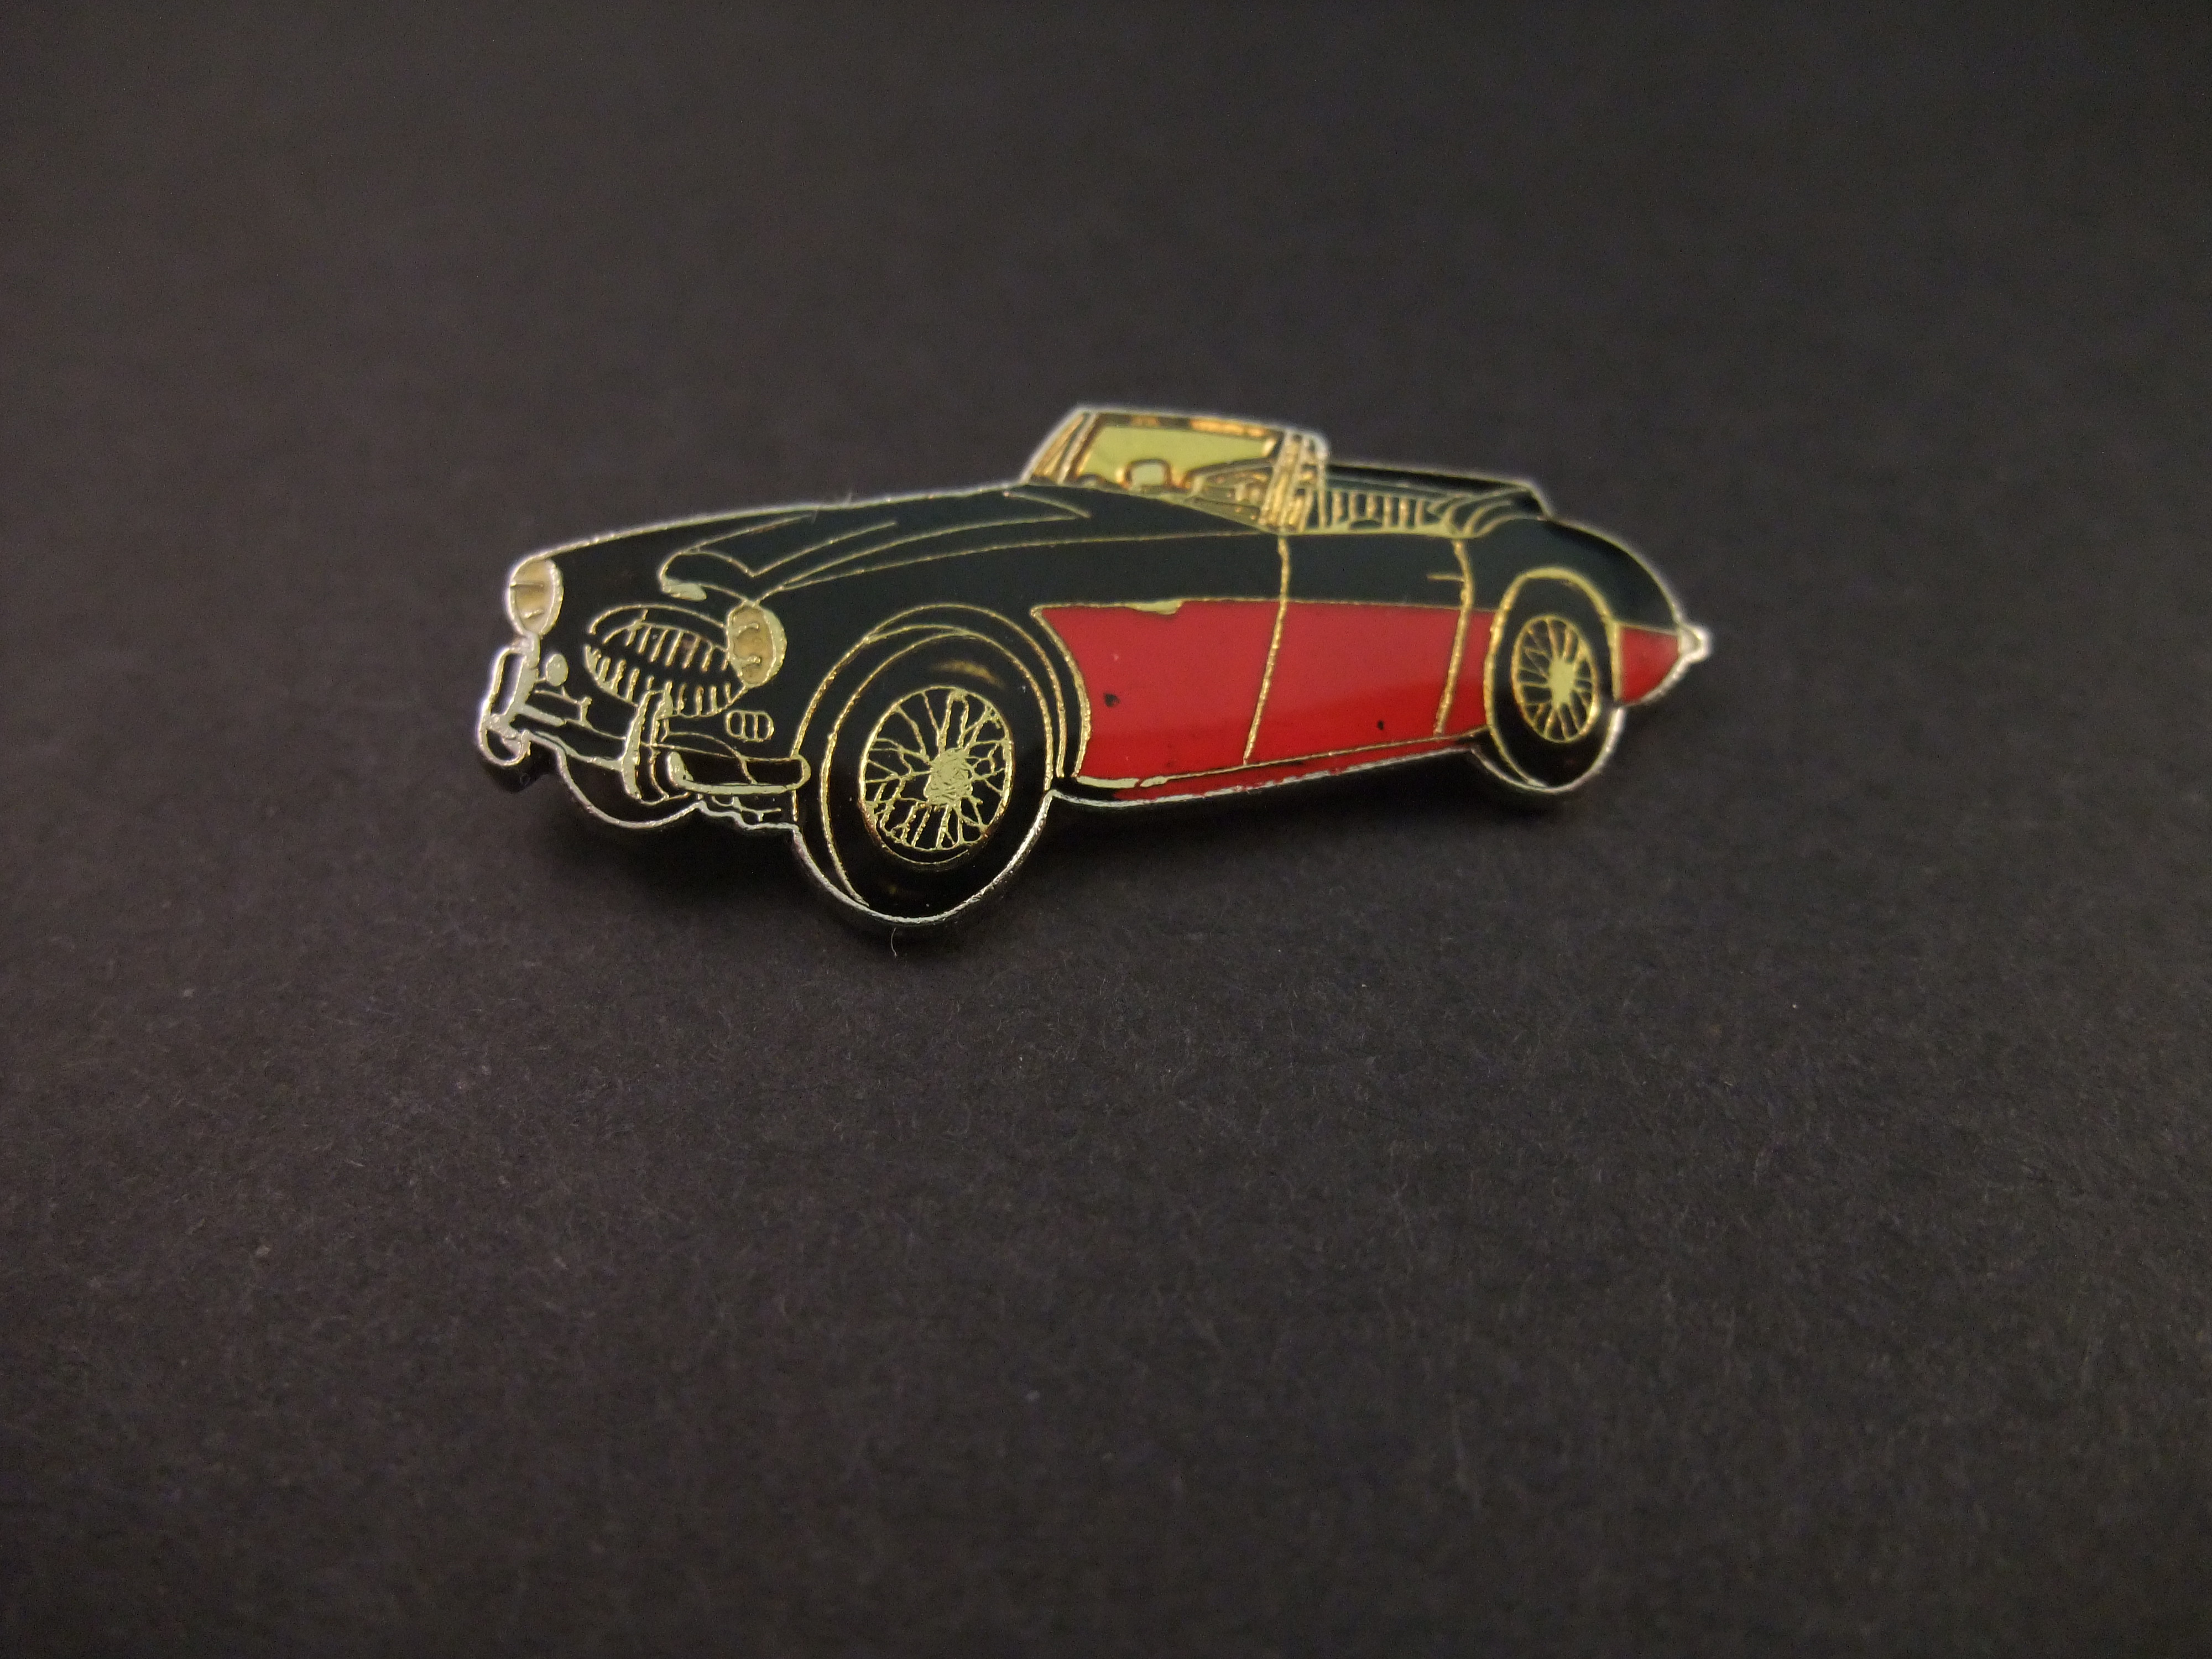 Austin Healey 3000. 1959-1967 oldtimer rood-zwart model